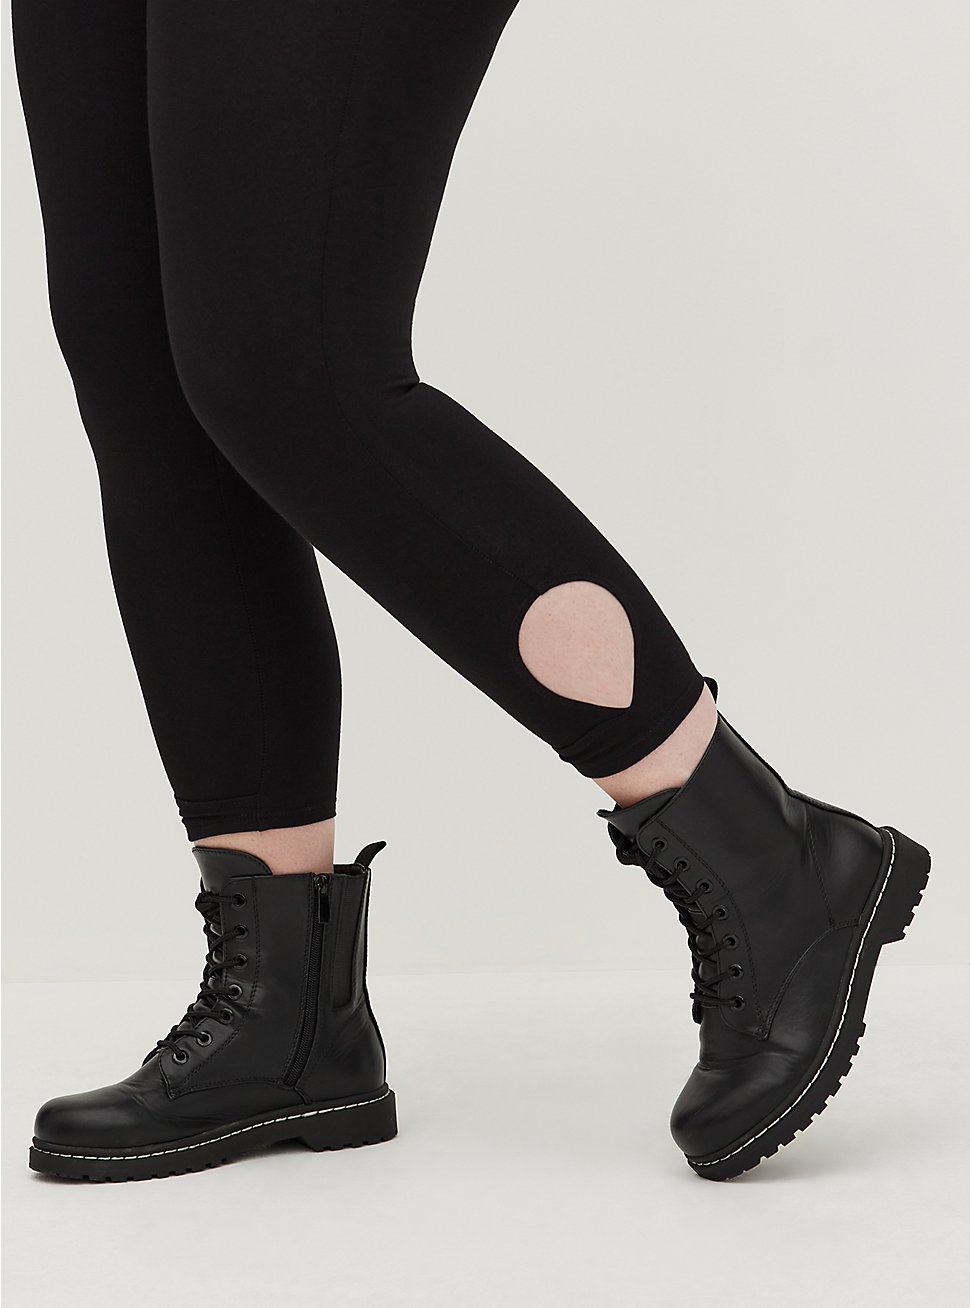 Plus Size Crop Premium Legging - Surplice Keyhole Side Detail Black, BLACK, hi-res